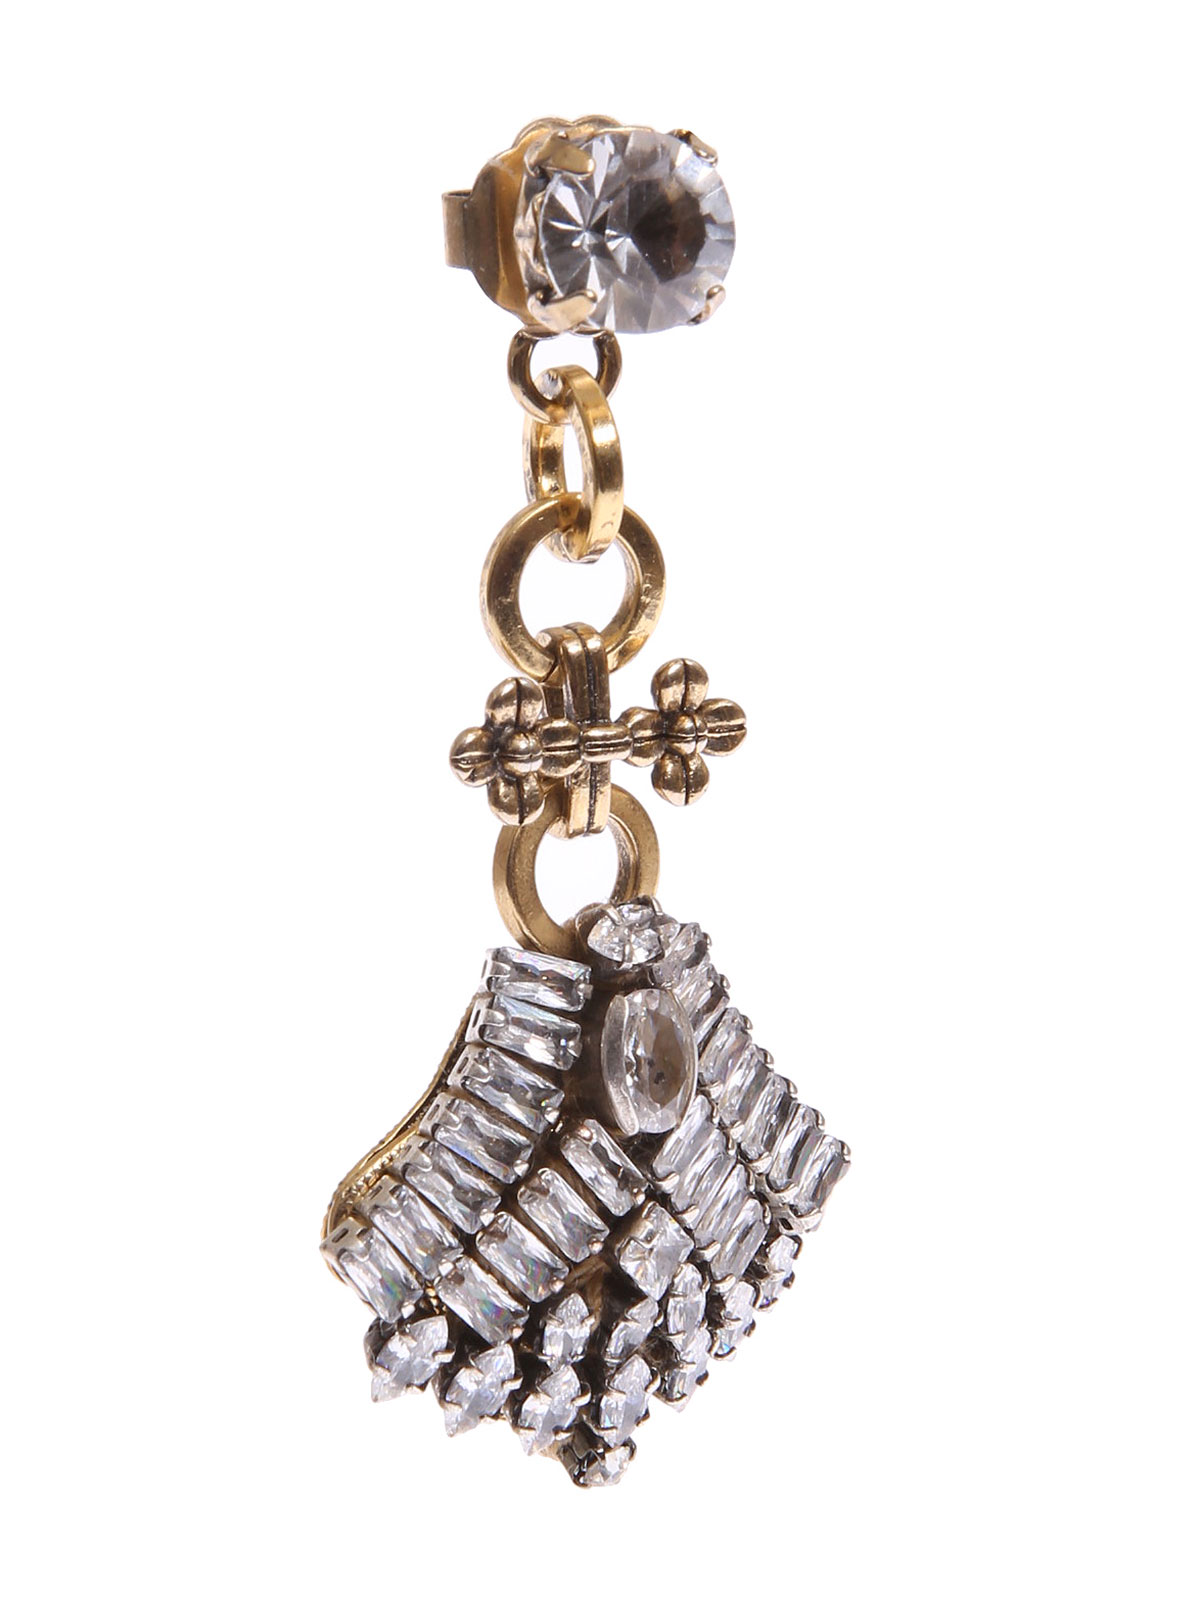 Stone earrings with jewel fan pendant 